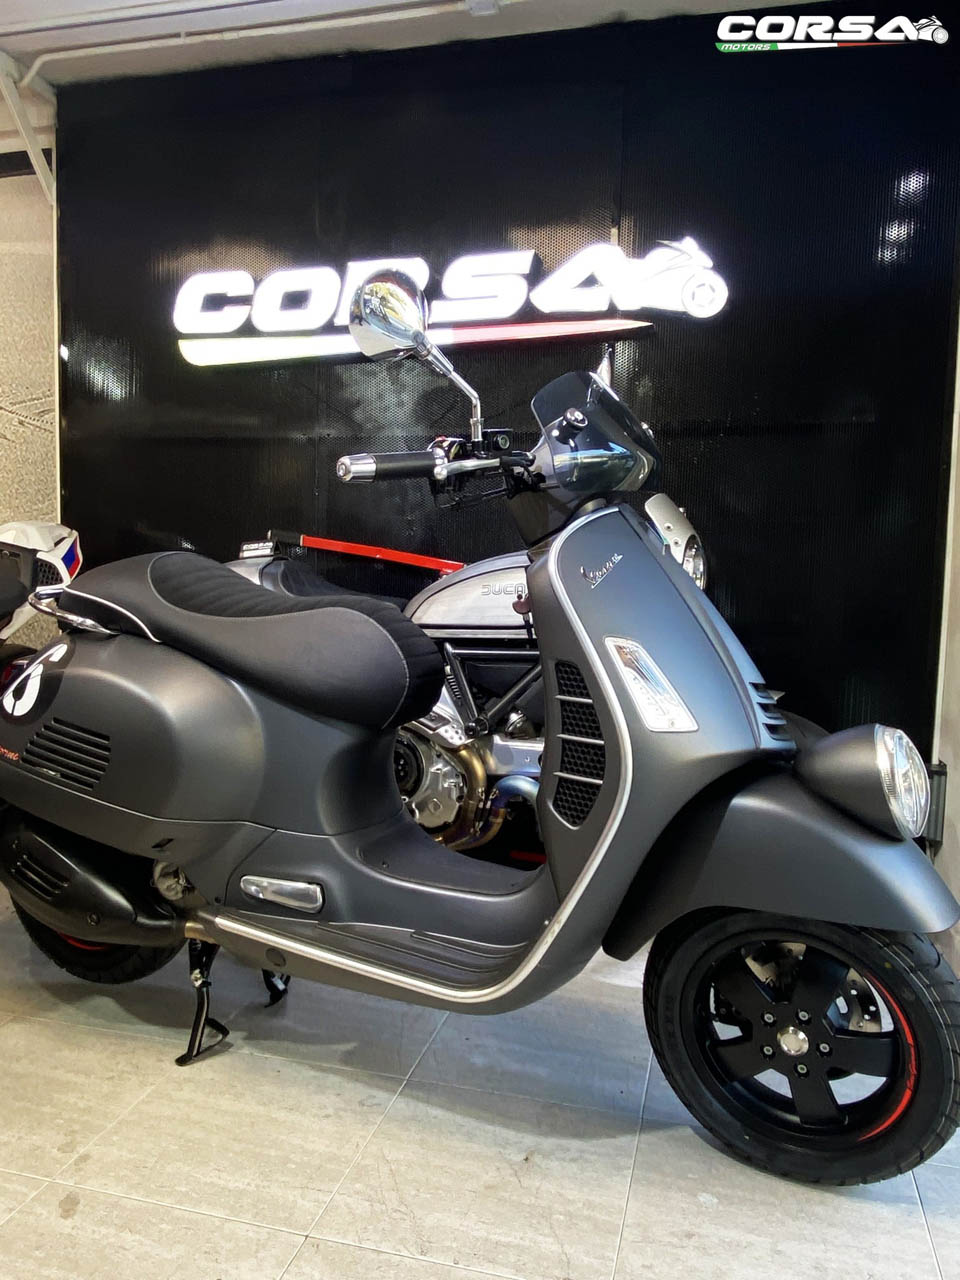 2020 Vespa & Rizoma CORSA MOTORS